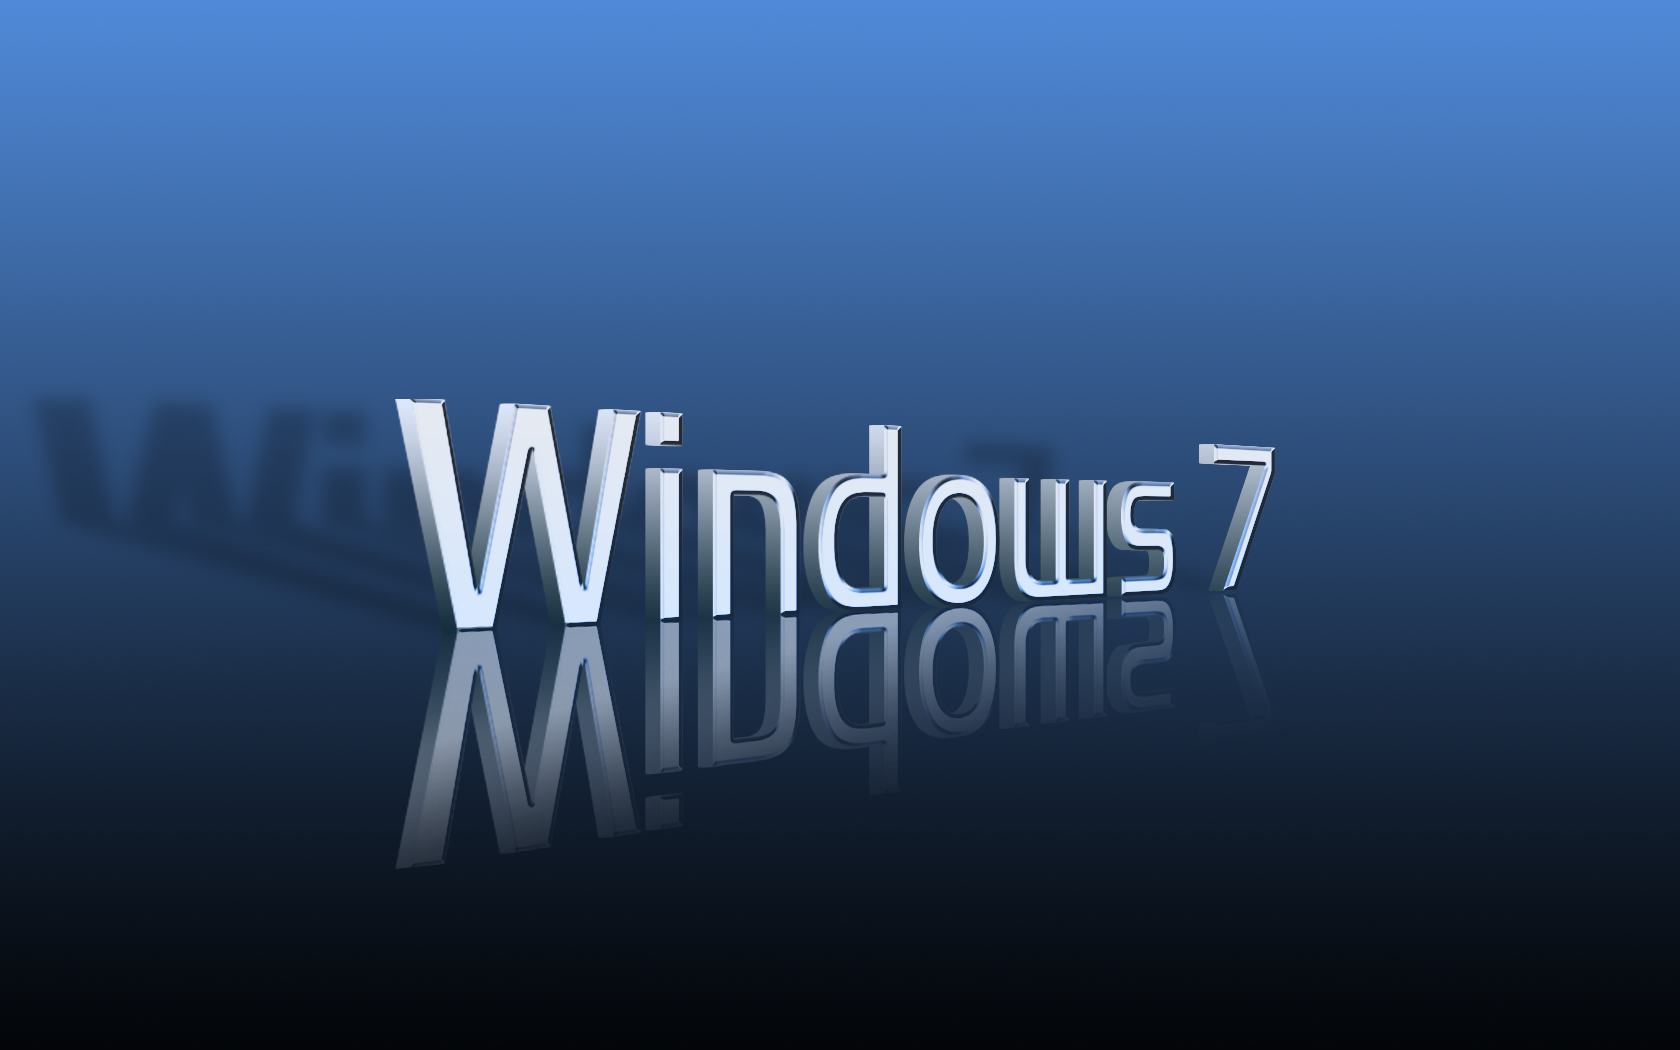 3D Blue Windows 7 Wallpaper by enul01 on DeviantArt